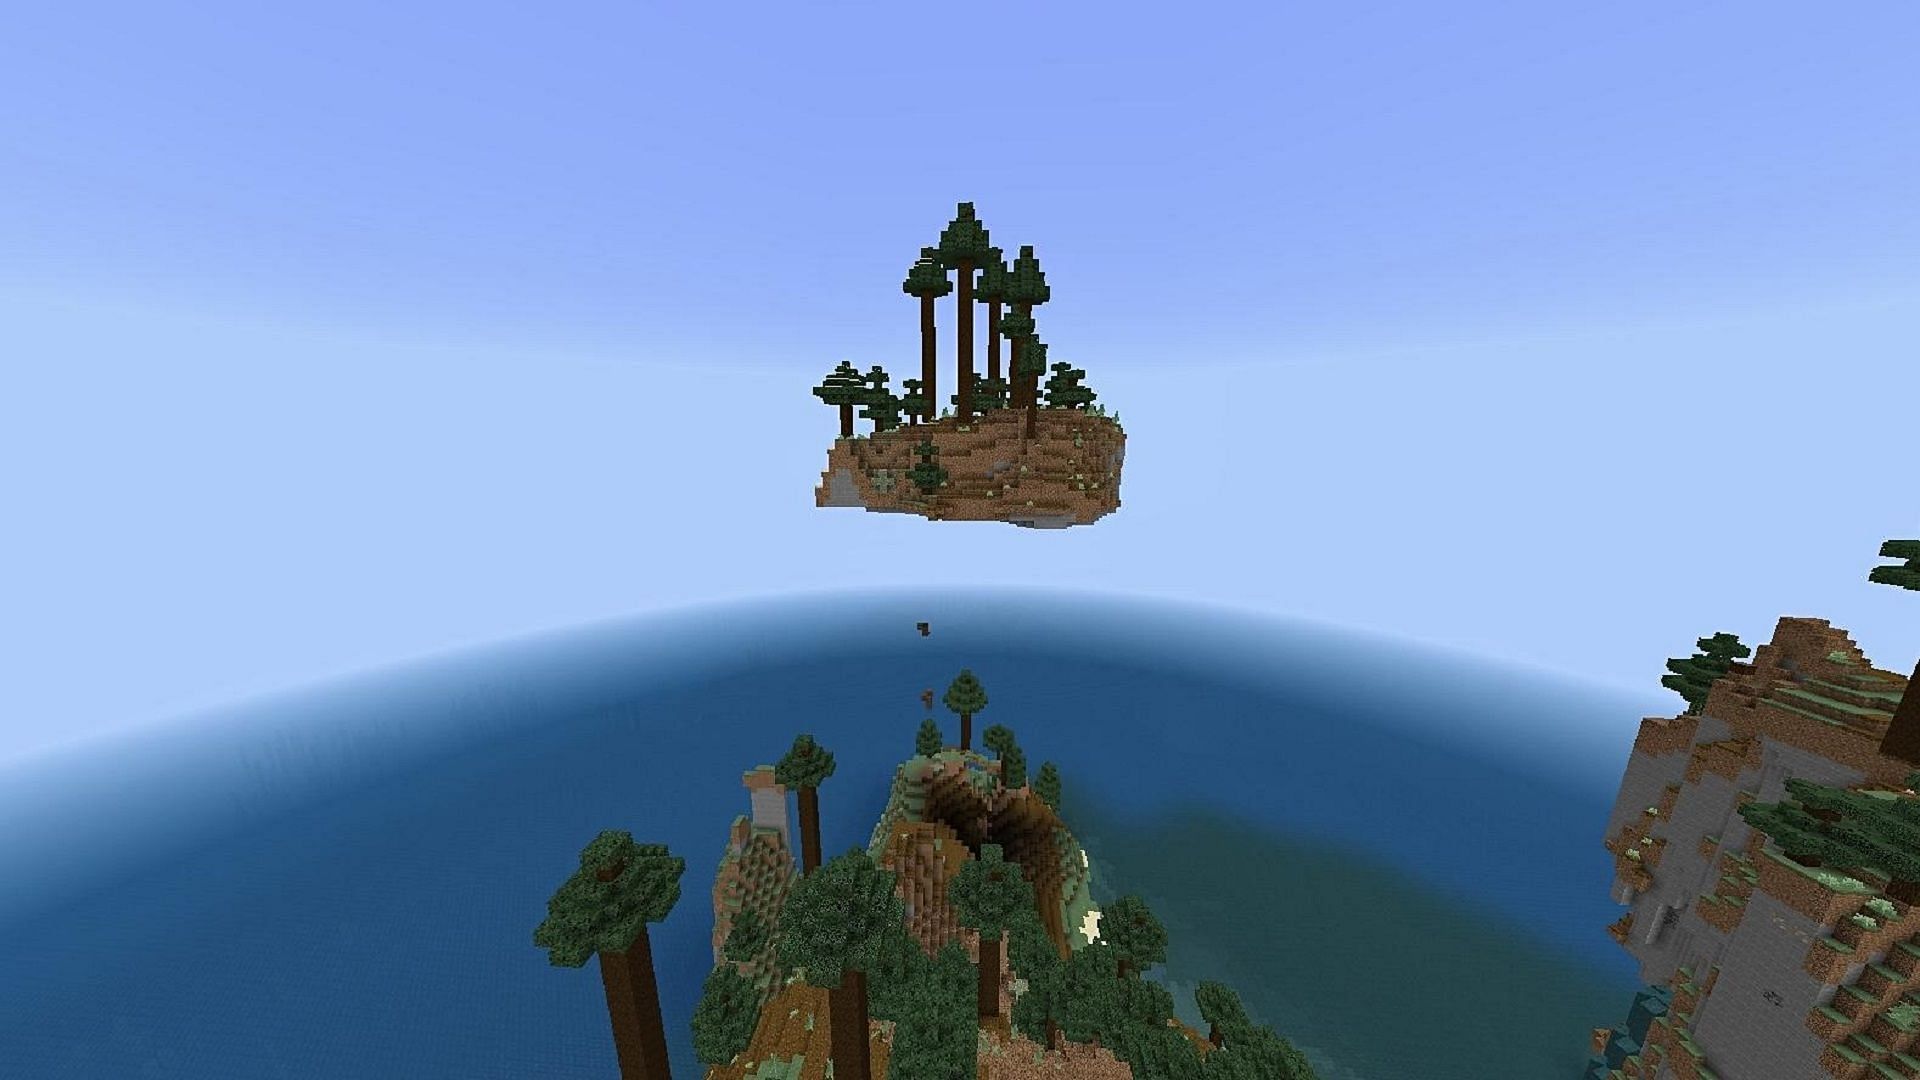 Старт на плавучем острове, вероятно, не идеален для большинства игроков (Изображение взято с YourLocalKnight/Reddit)